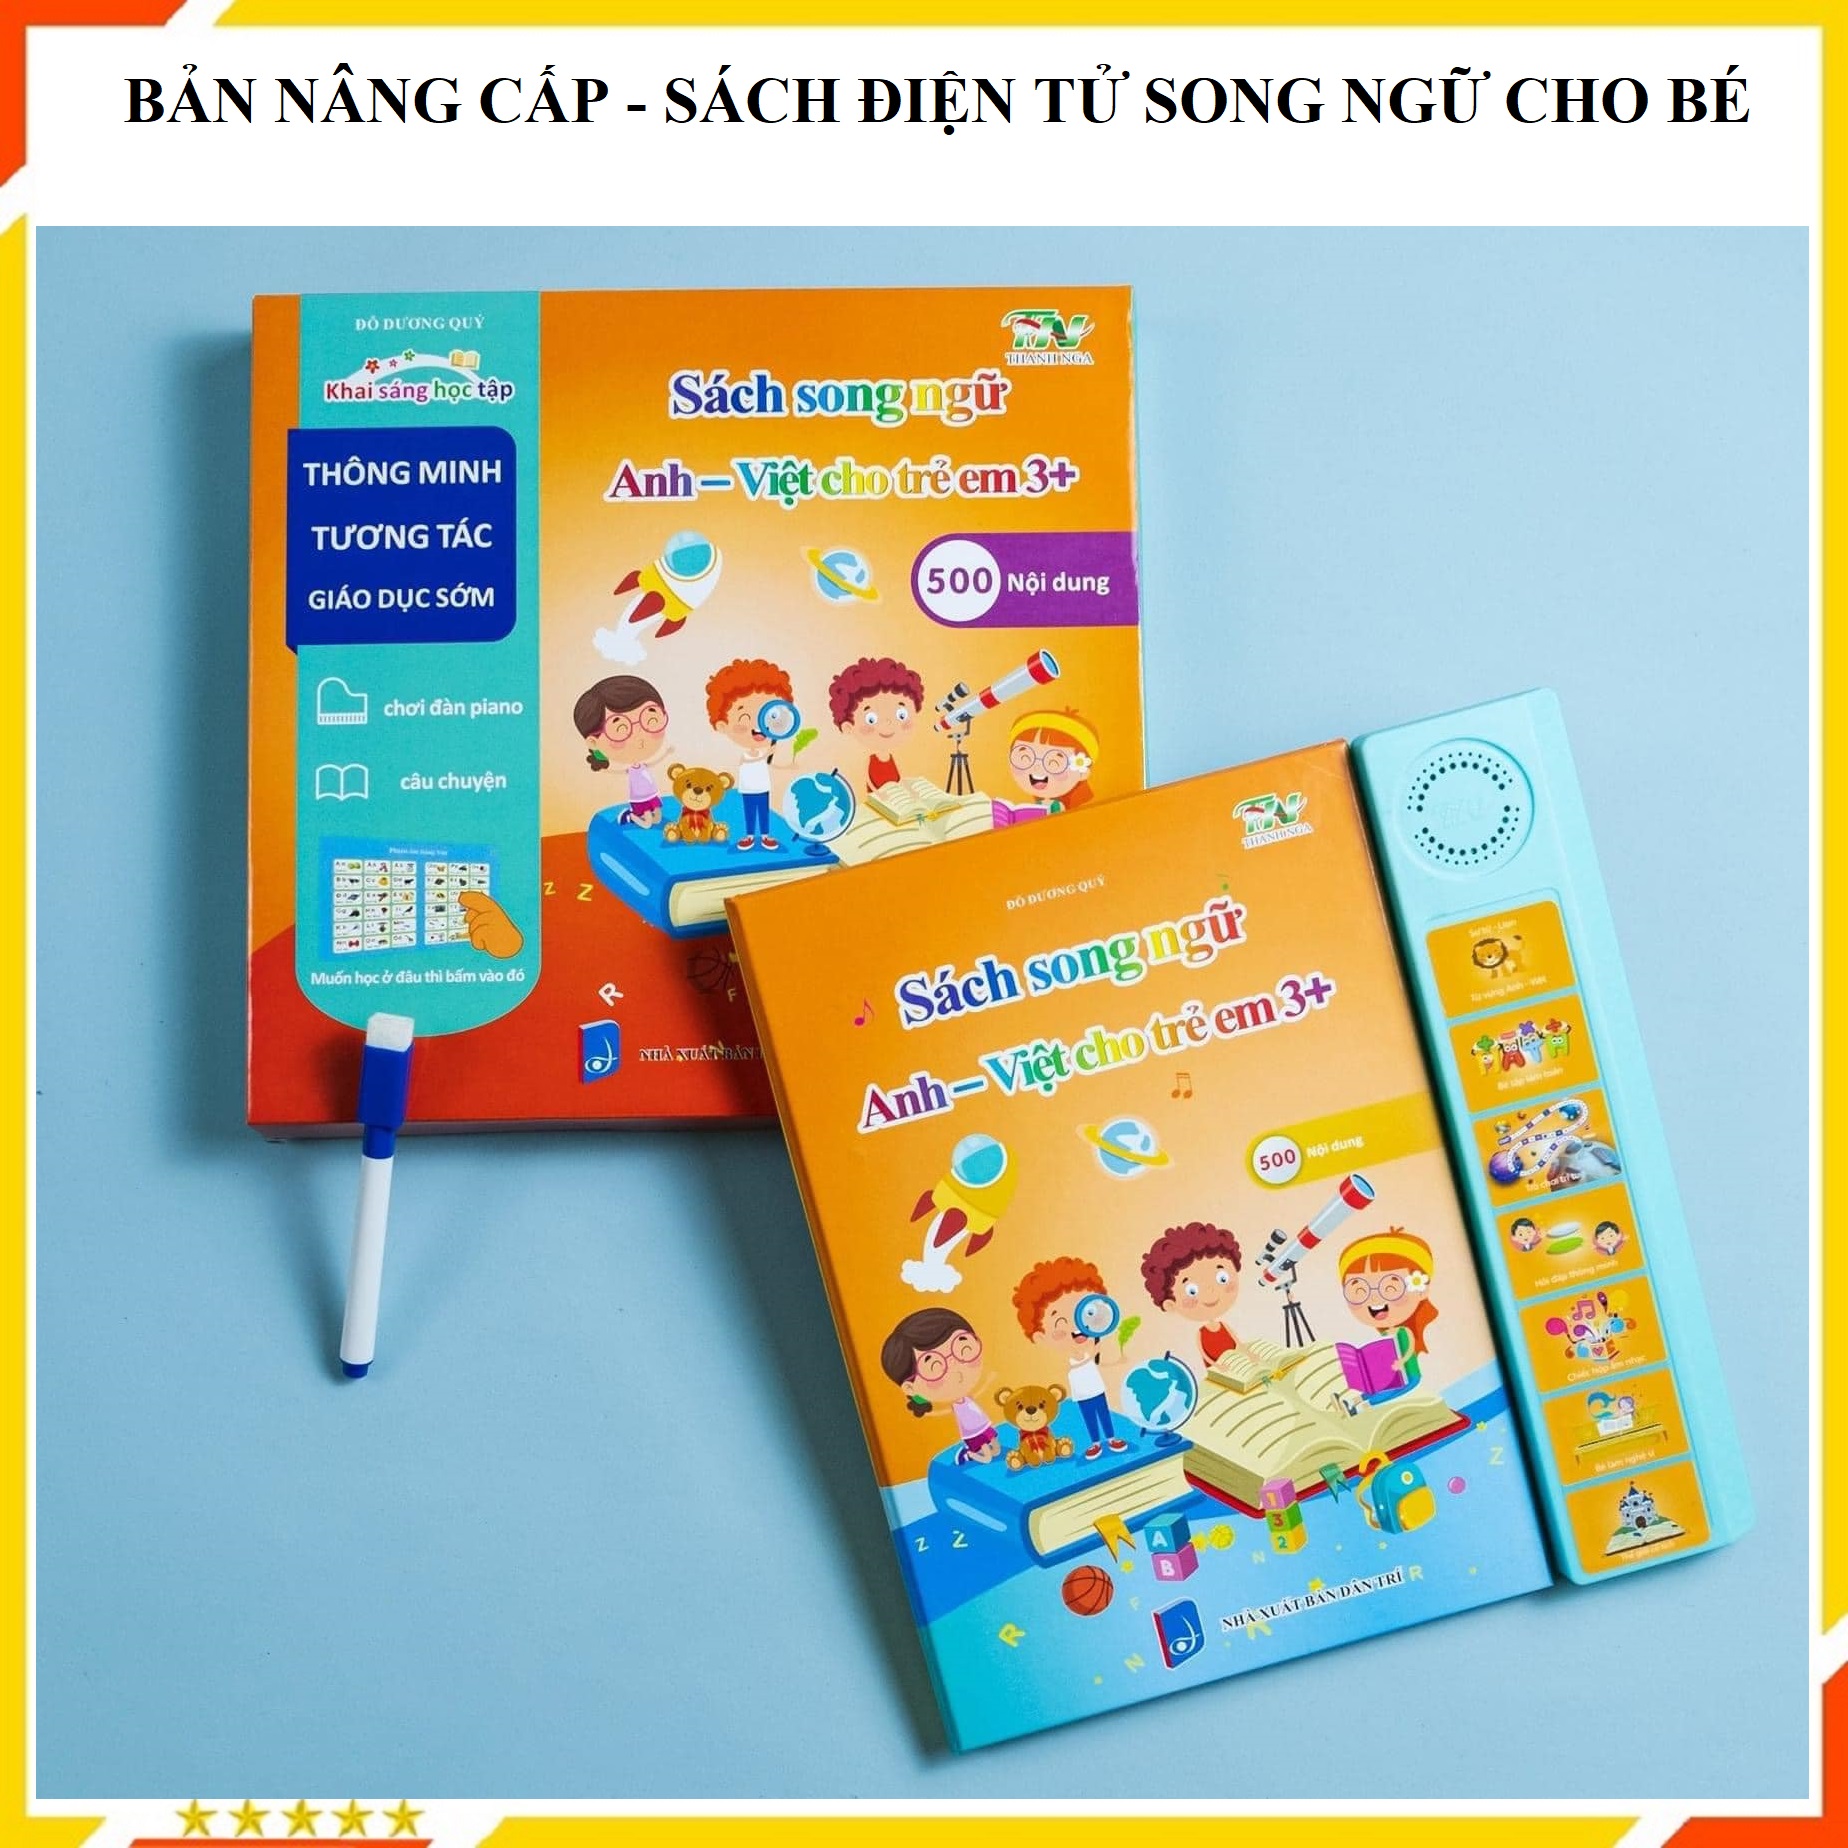 BẢN NÂNG CẤP MỚI - Sách nói điện tử song ngữ trẻ em kèm đàn và kể chuyện  - Sách quý điện tử song ngữ Anh – Việt cho bé - Đồ Chơi Trẻ Em HT SYS